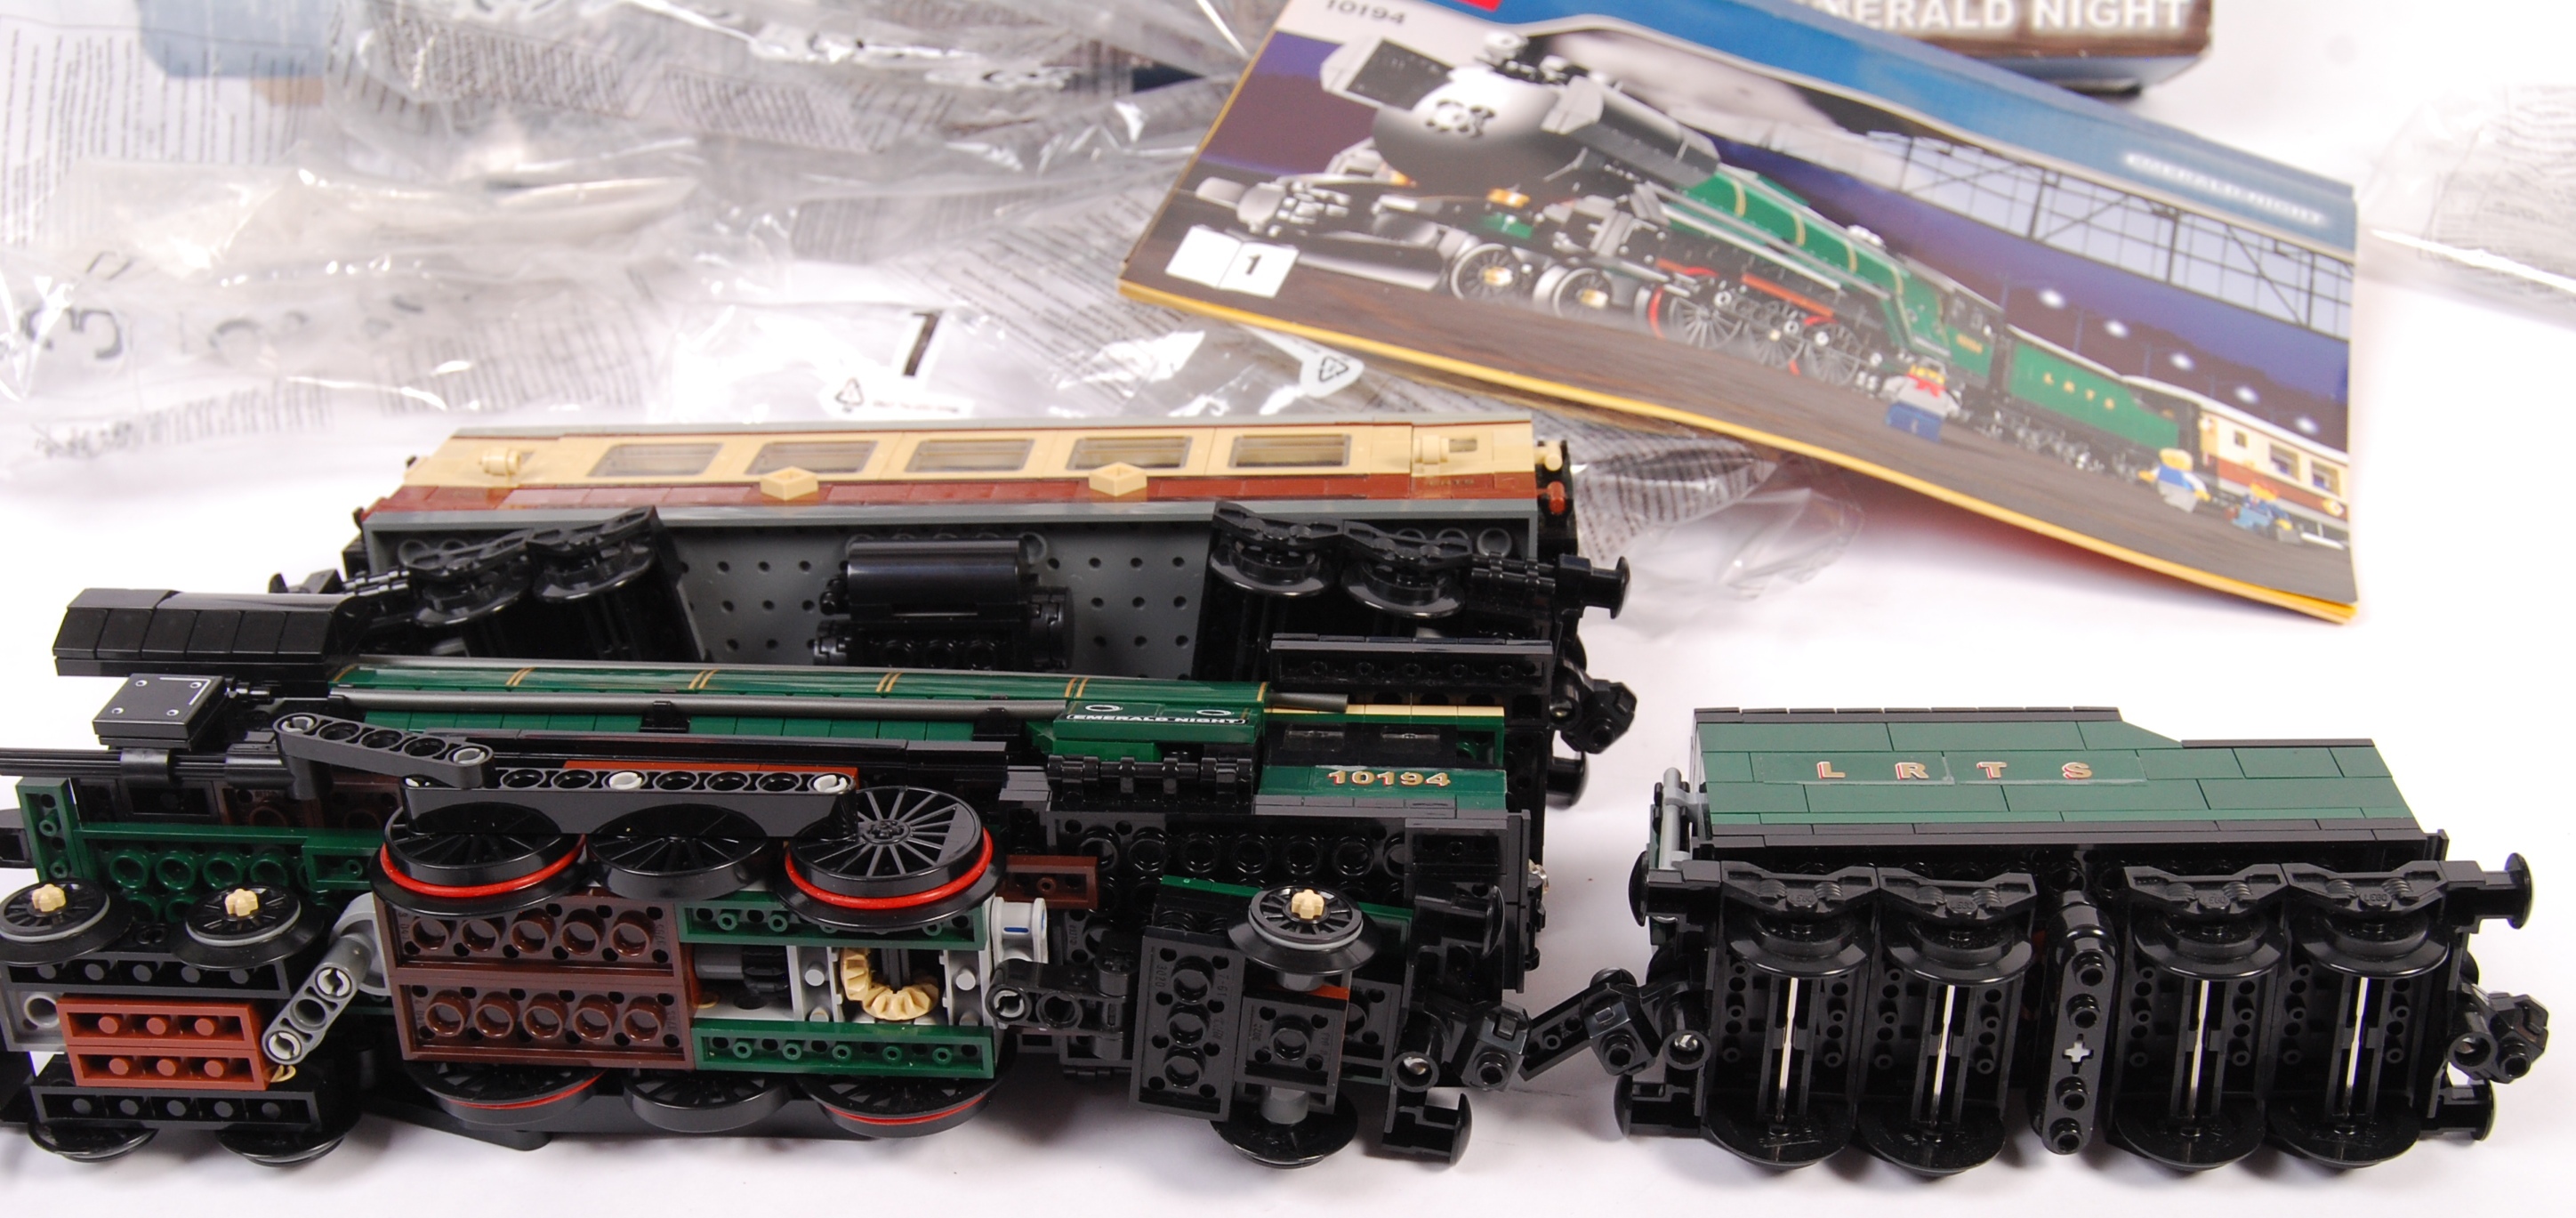 RARE LEGO ' EMERALD NIGHT ' BOXED TRAINSET SET 10194 - Image 5 of 5